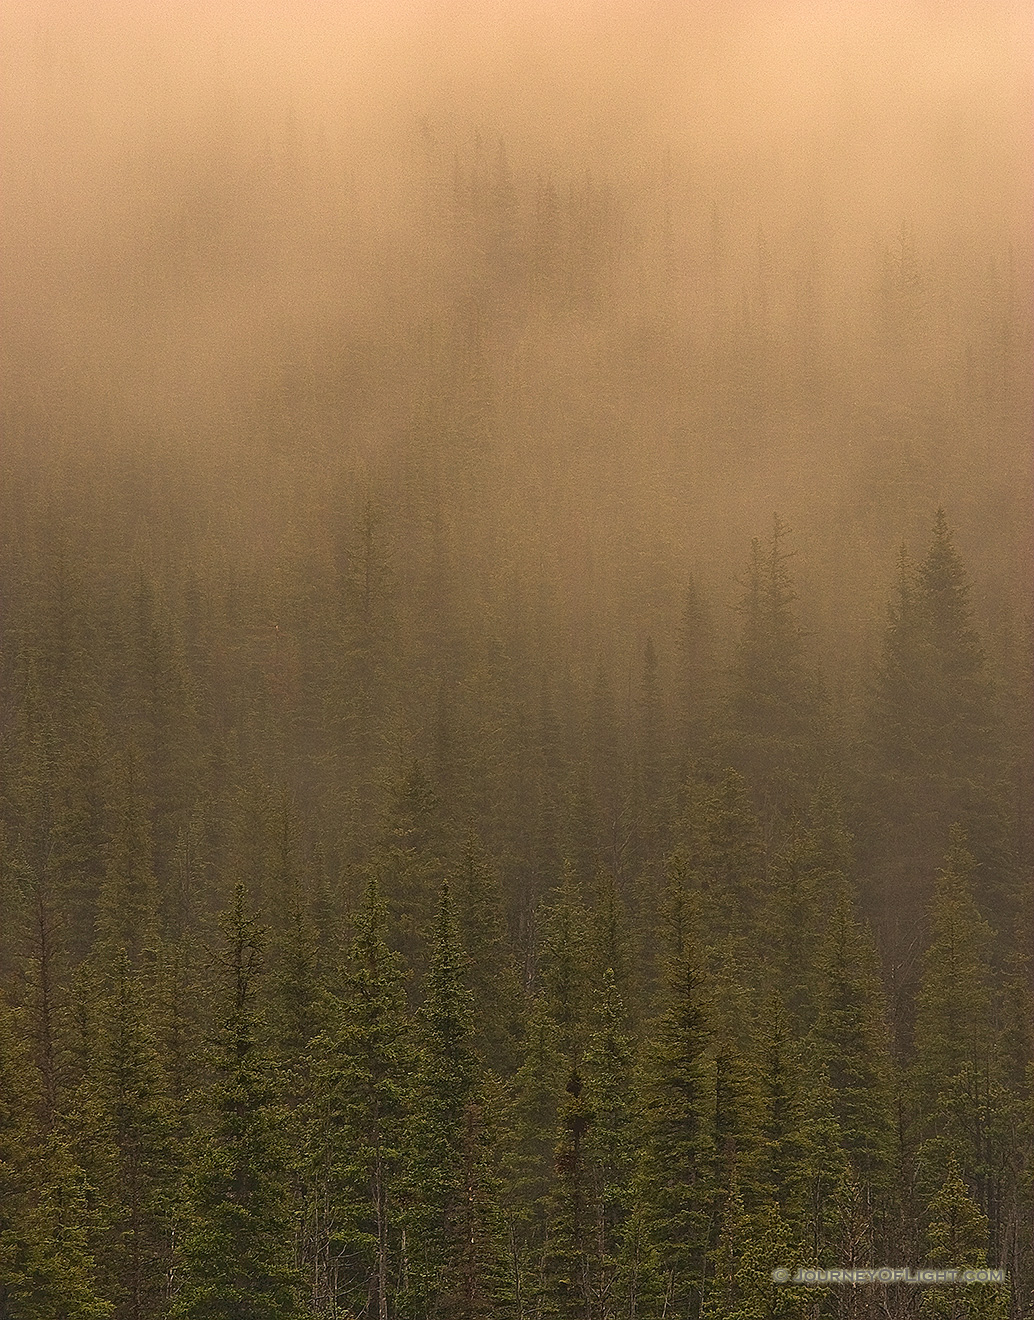 Fog descends on a pine forest in Glacier National Park, Montana. - Glacier Picture